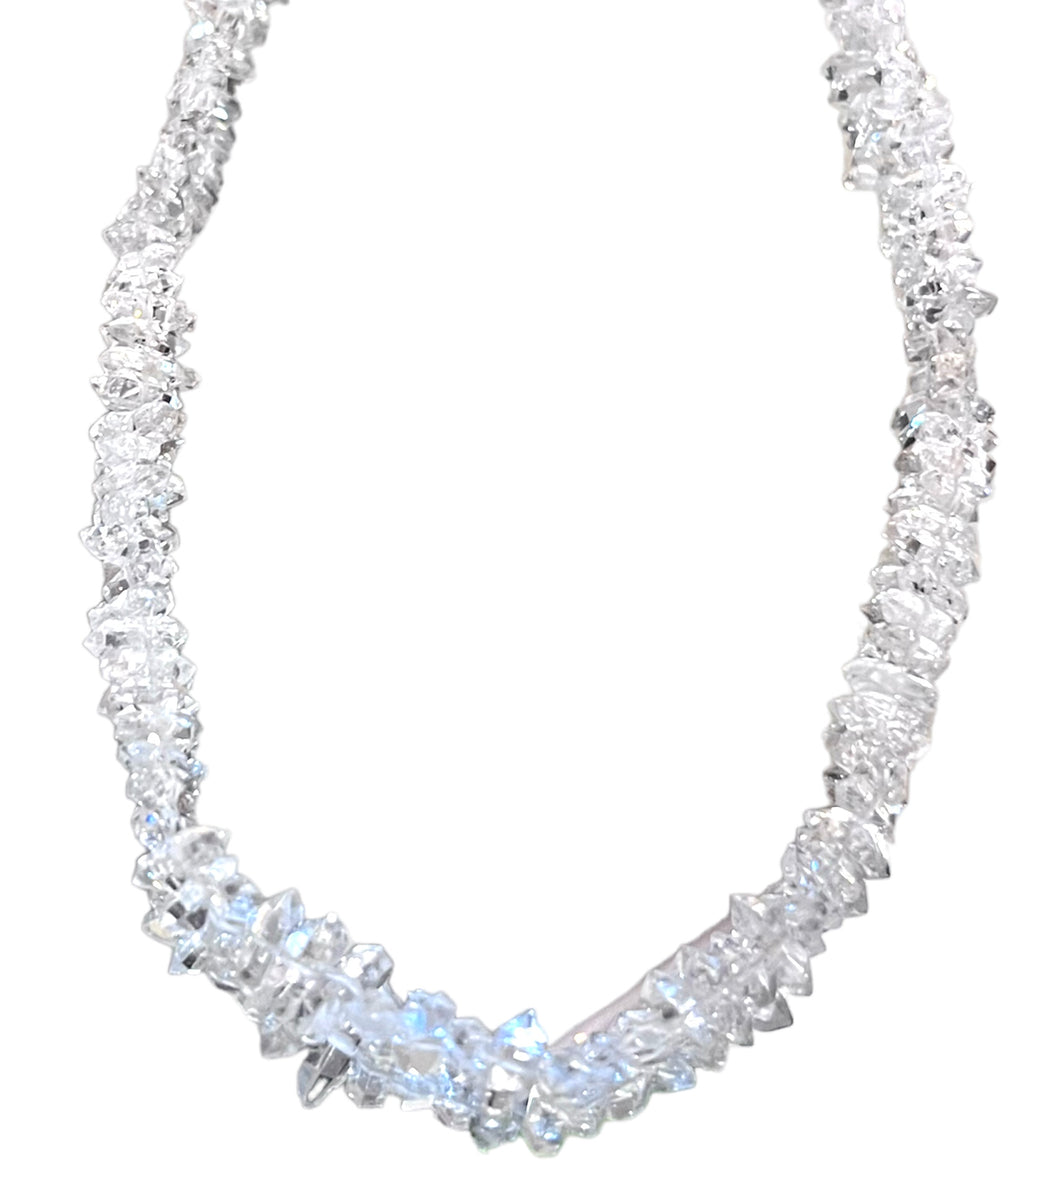 Herkumer diamond necklace